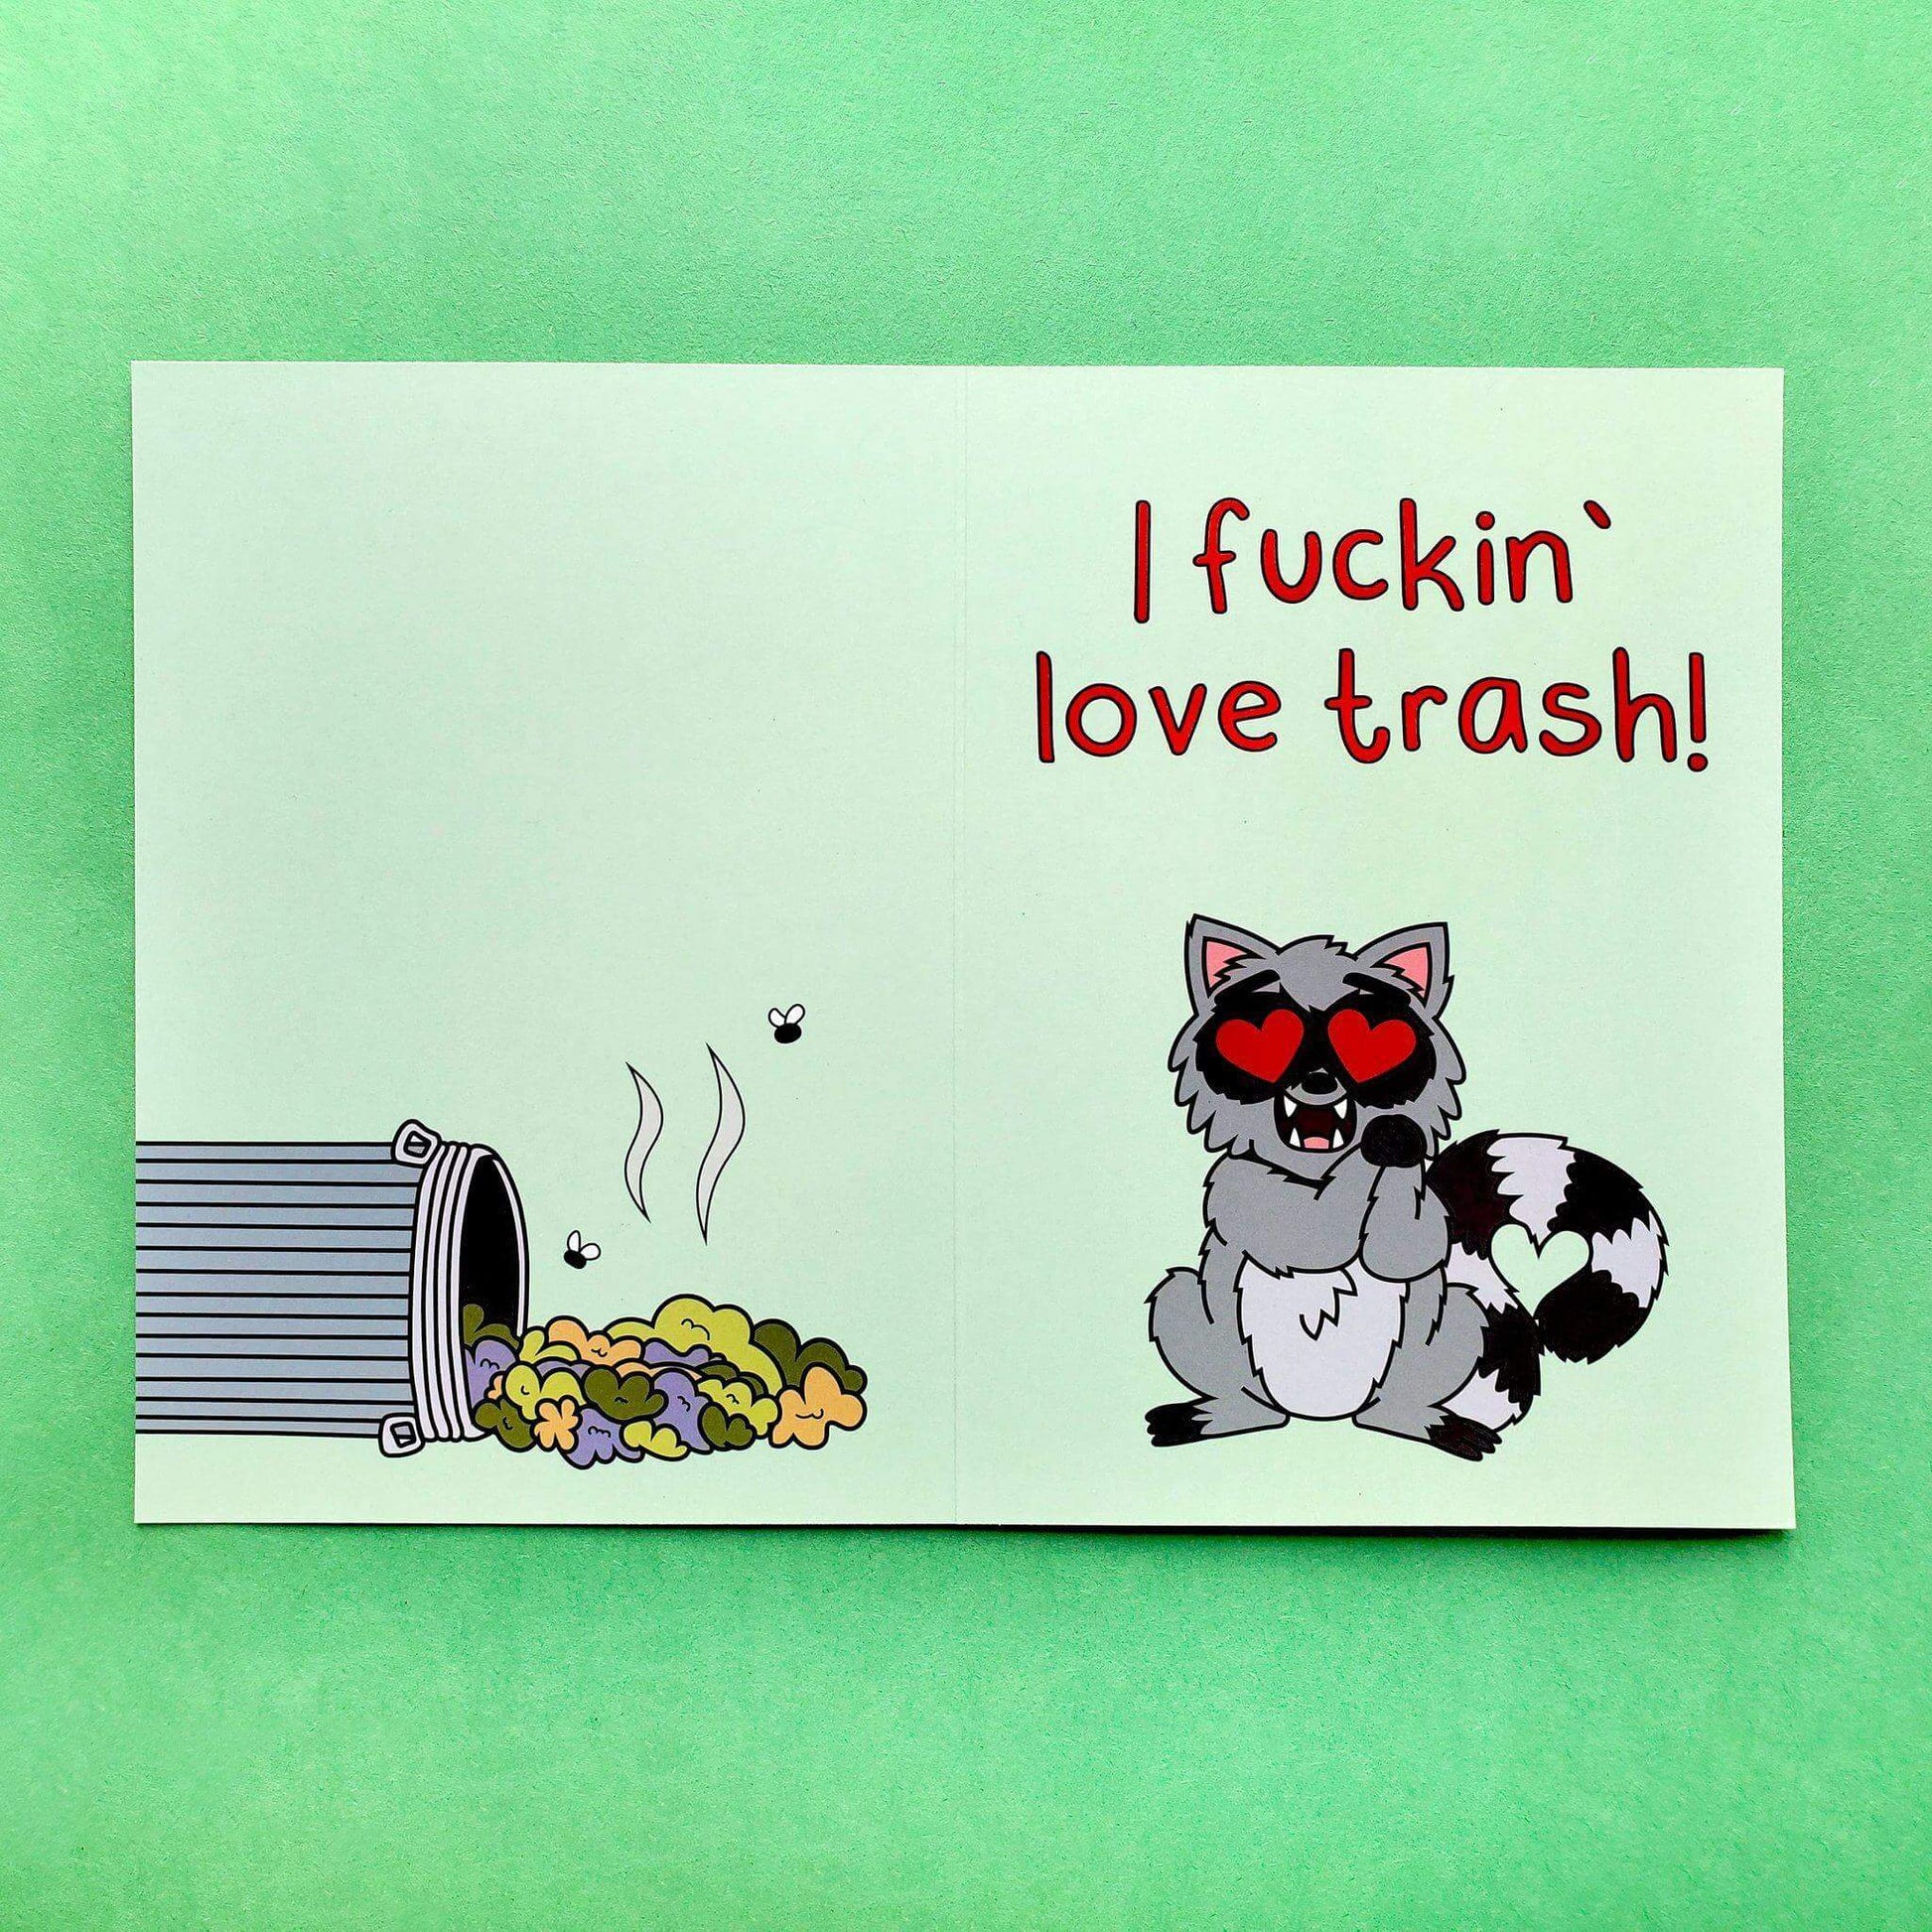 "Trash" Greeting Card - Kolorspun Enamel Pins